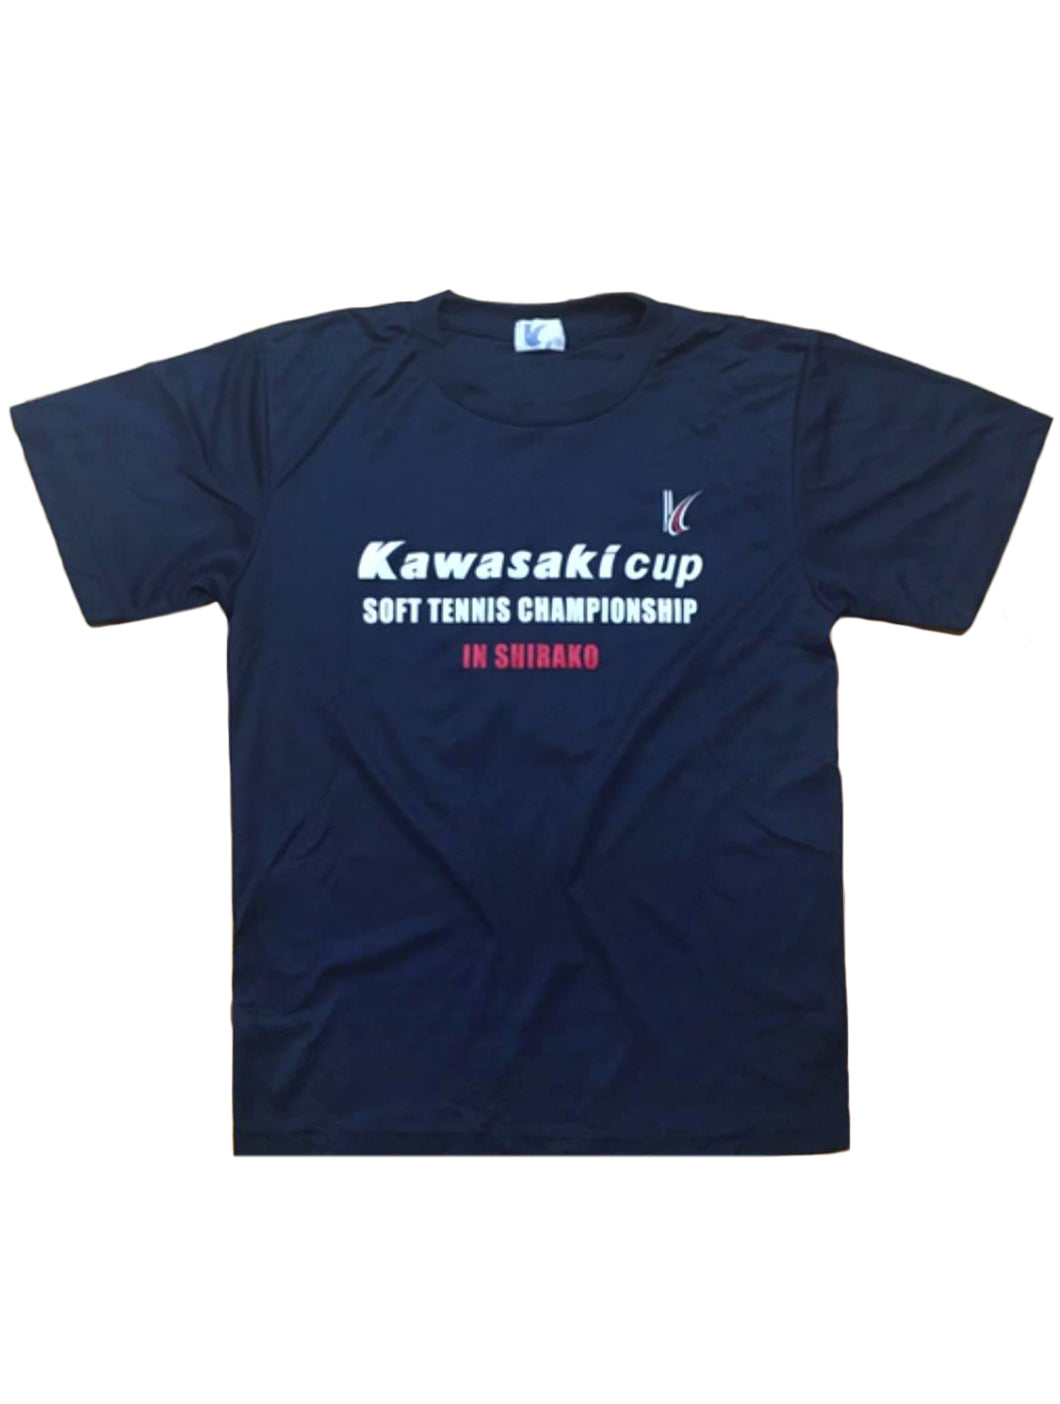 Kawasaki Cup Championship T-Shirt